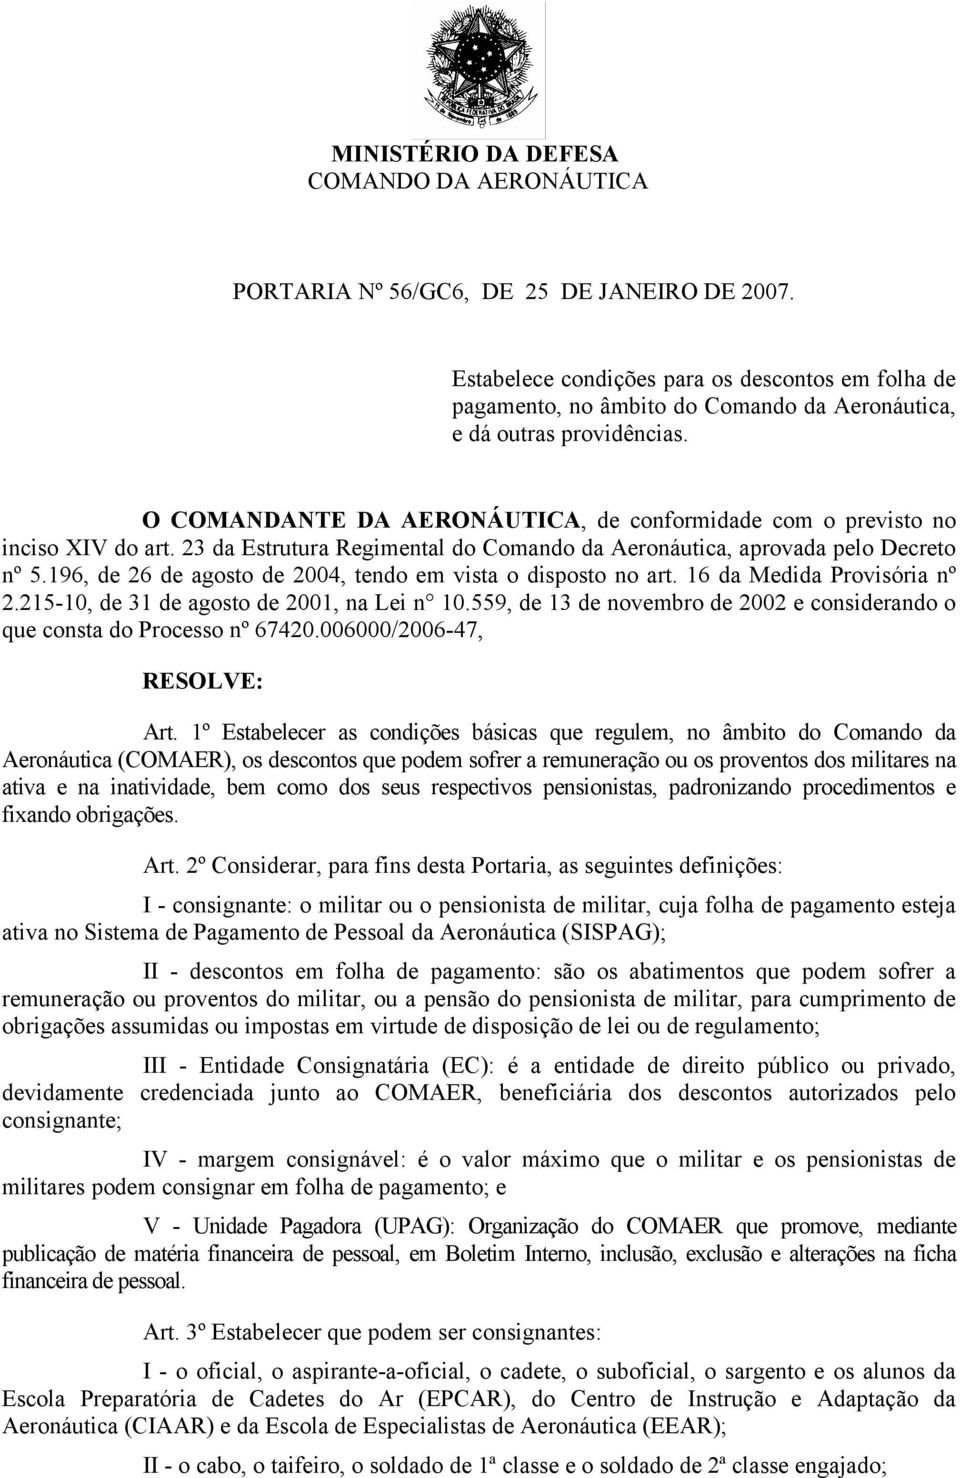 O COMANDANTE DA AERONÁUTICA, de conformidade com o previsto no inciso XIV do art. 23 da Estrutura Regimental do Comando da Aeronáutica, aprovada pelo Decreto nº 5.